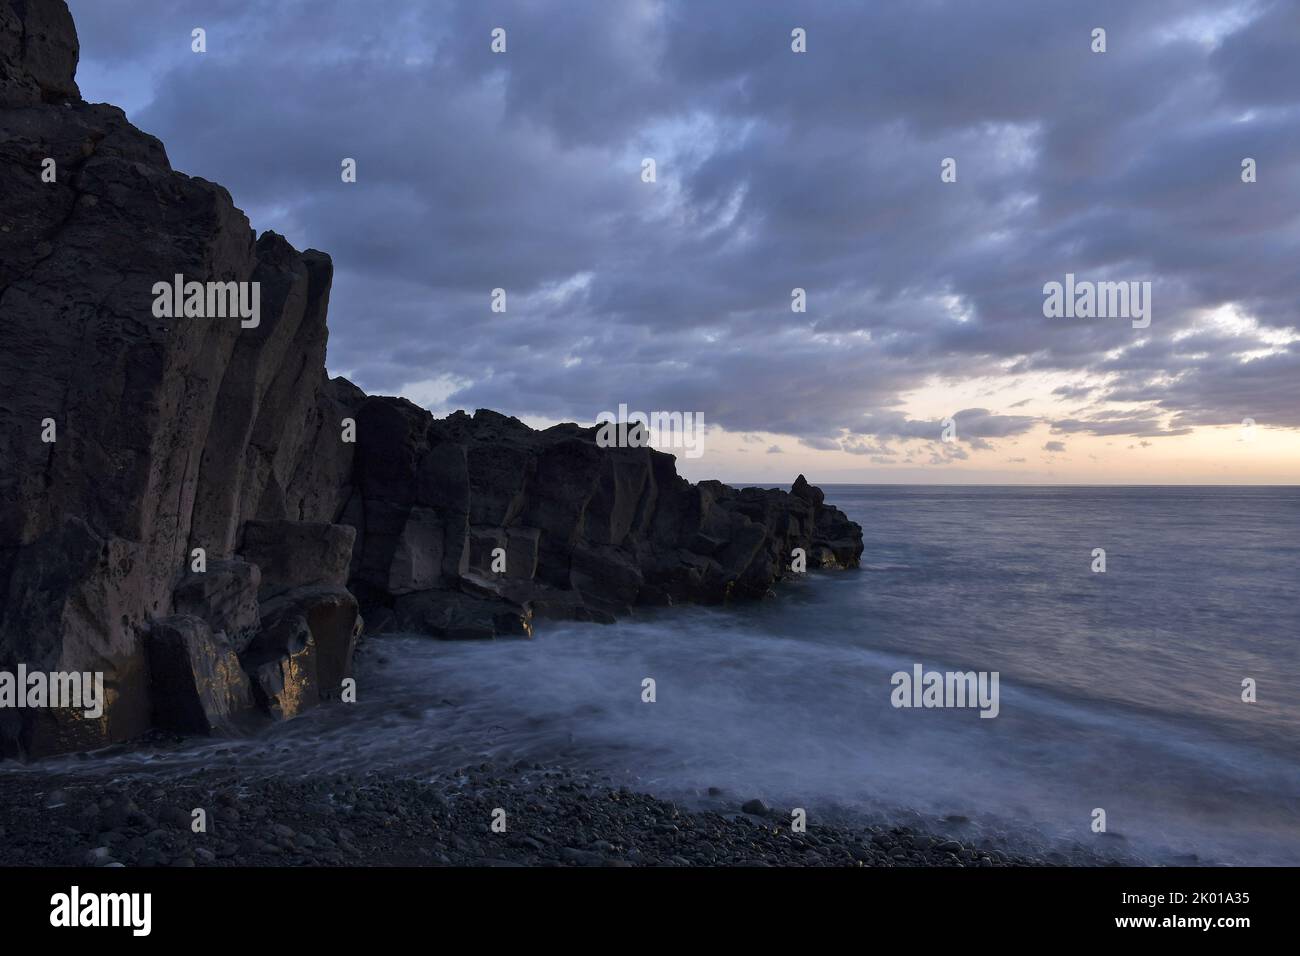 Vulkanische Gesteinsformationen an der Küste des Atlantischen Ozeans in der Abenddämmerung, Strand Praia Formosa in der Nähe von Funchal Madeira Portugal. Stockfoto